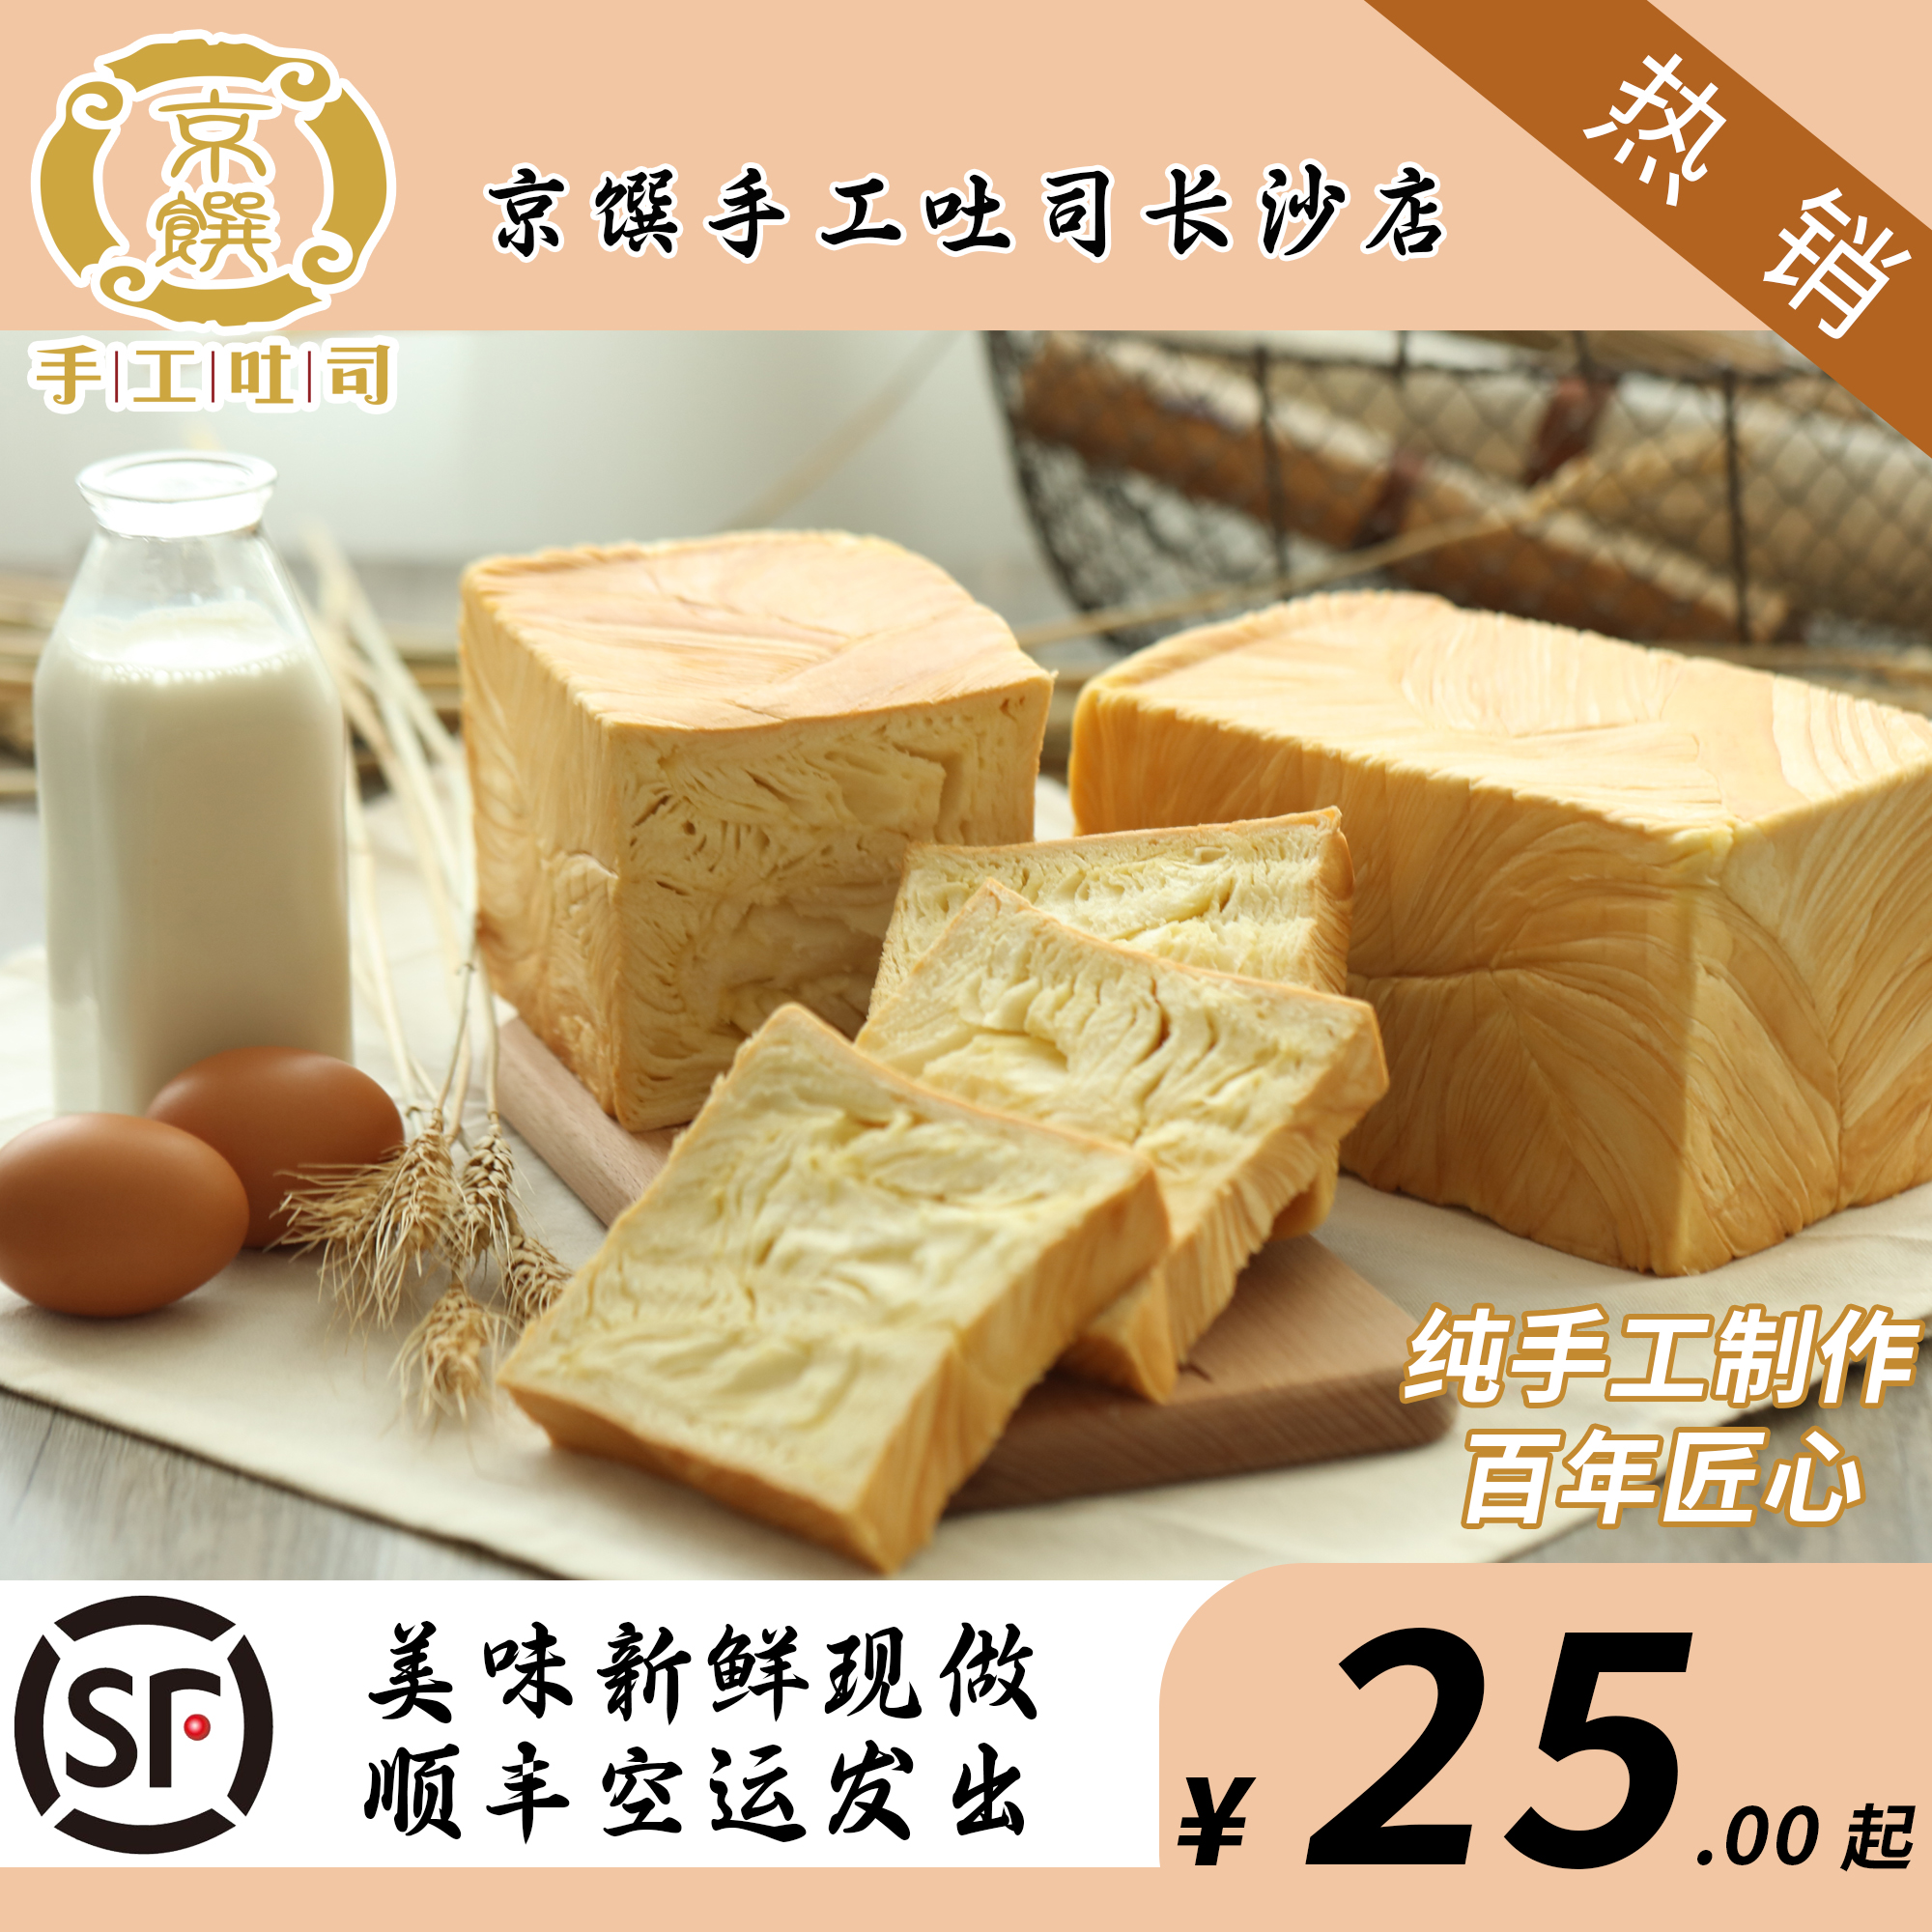 长沙店现做烘焙台湾京馔纯手工吐司奶香厚切面包满88元顺丰包邮